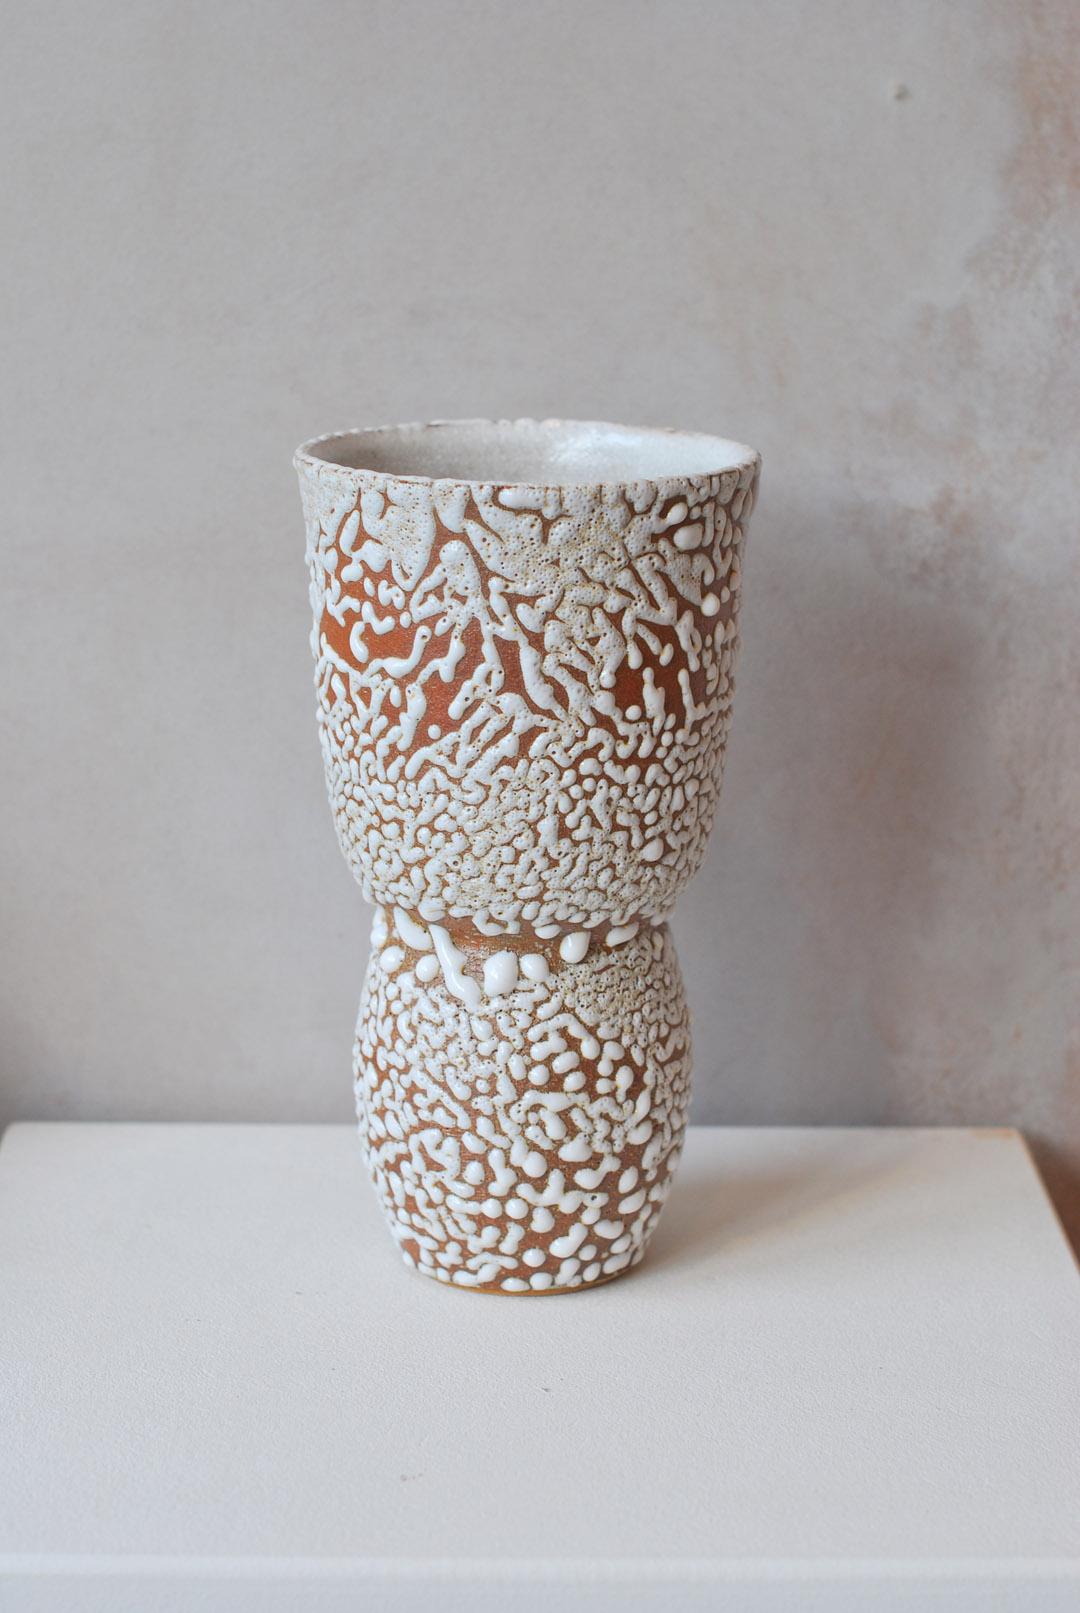 C-019 Vase en grès blanc par Moïo Studio
Dimensions : D12 x L12 x H21 cm
MATERIAL : Glaçure crawlée blanche sur grès fauve
Fabriqué à la main sur la roue
Pièce unique, consulter pour les multiples

Artistics est le studio d'art céramique basé à